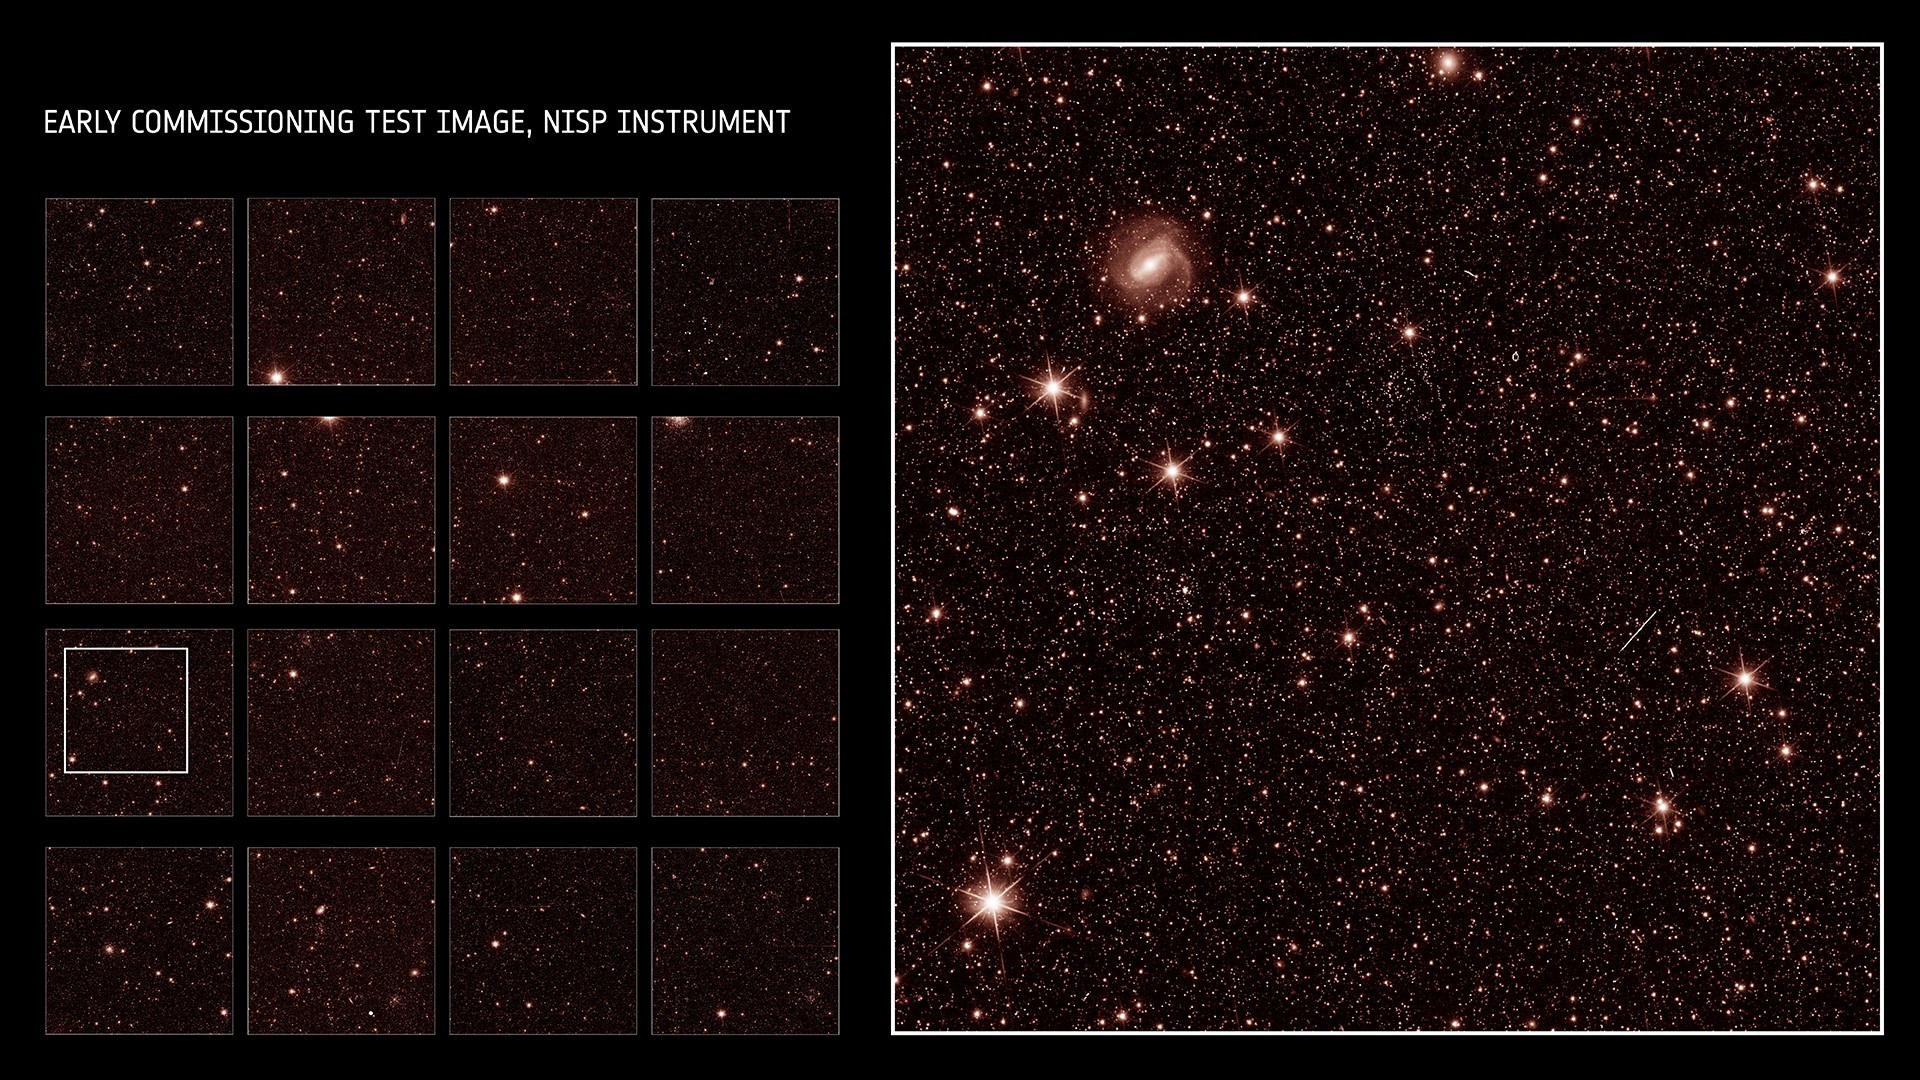 Karanlık evren’ teleskobu Euclid, ilk fotoğrafları gönderdi